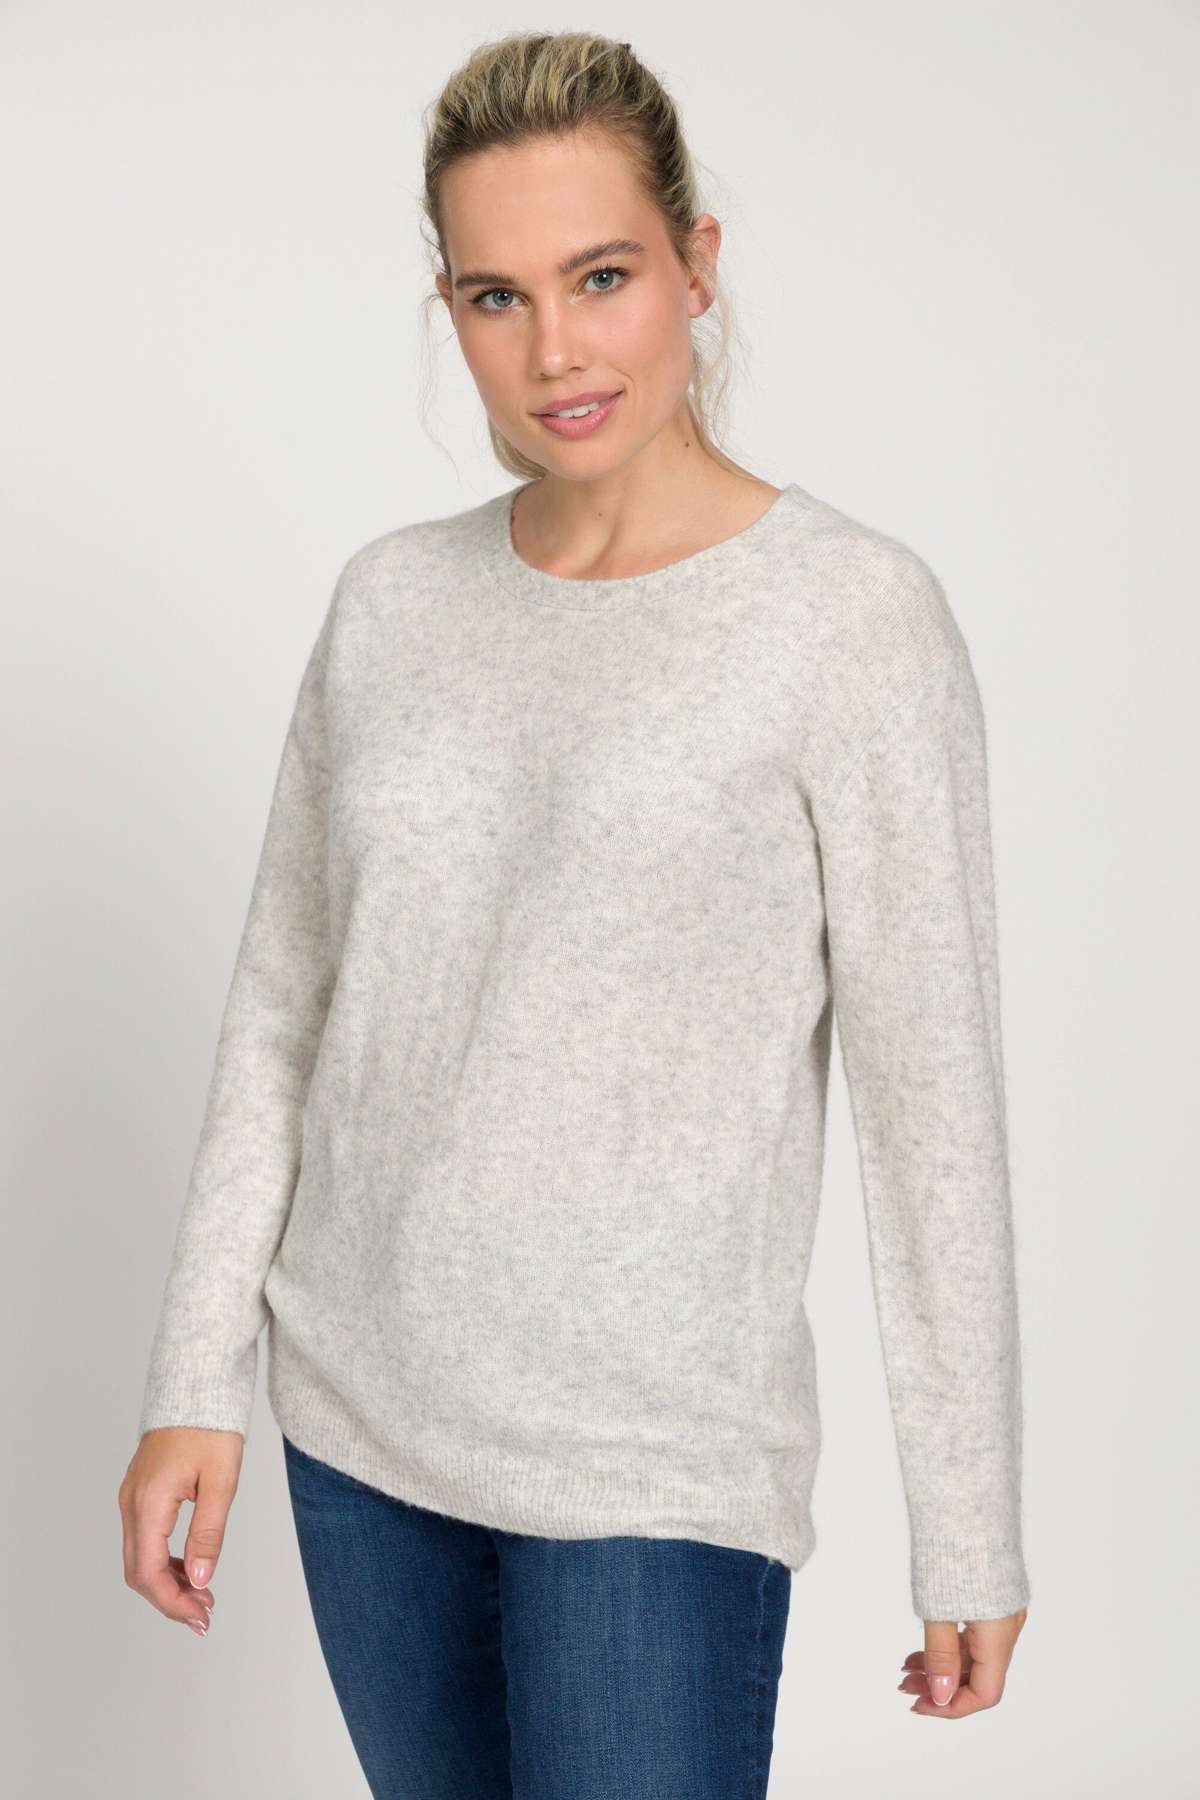 Длинный свитер-пуловер из качественной шерсти с круглым вырезом и длинными рукавами